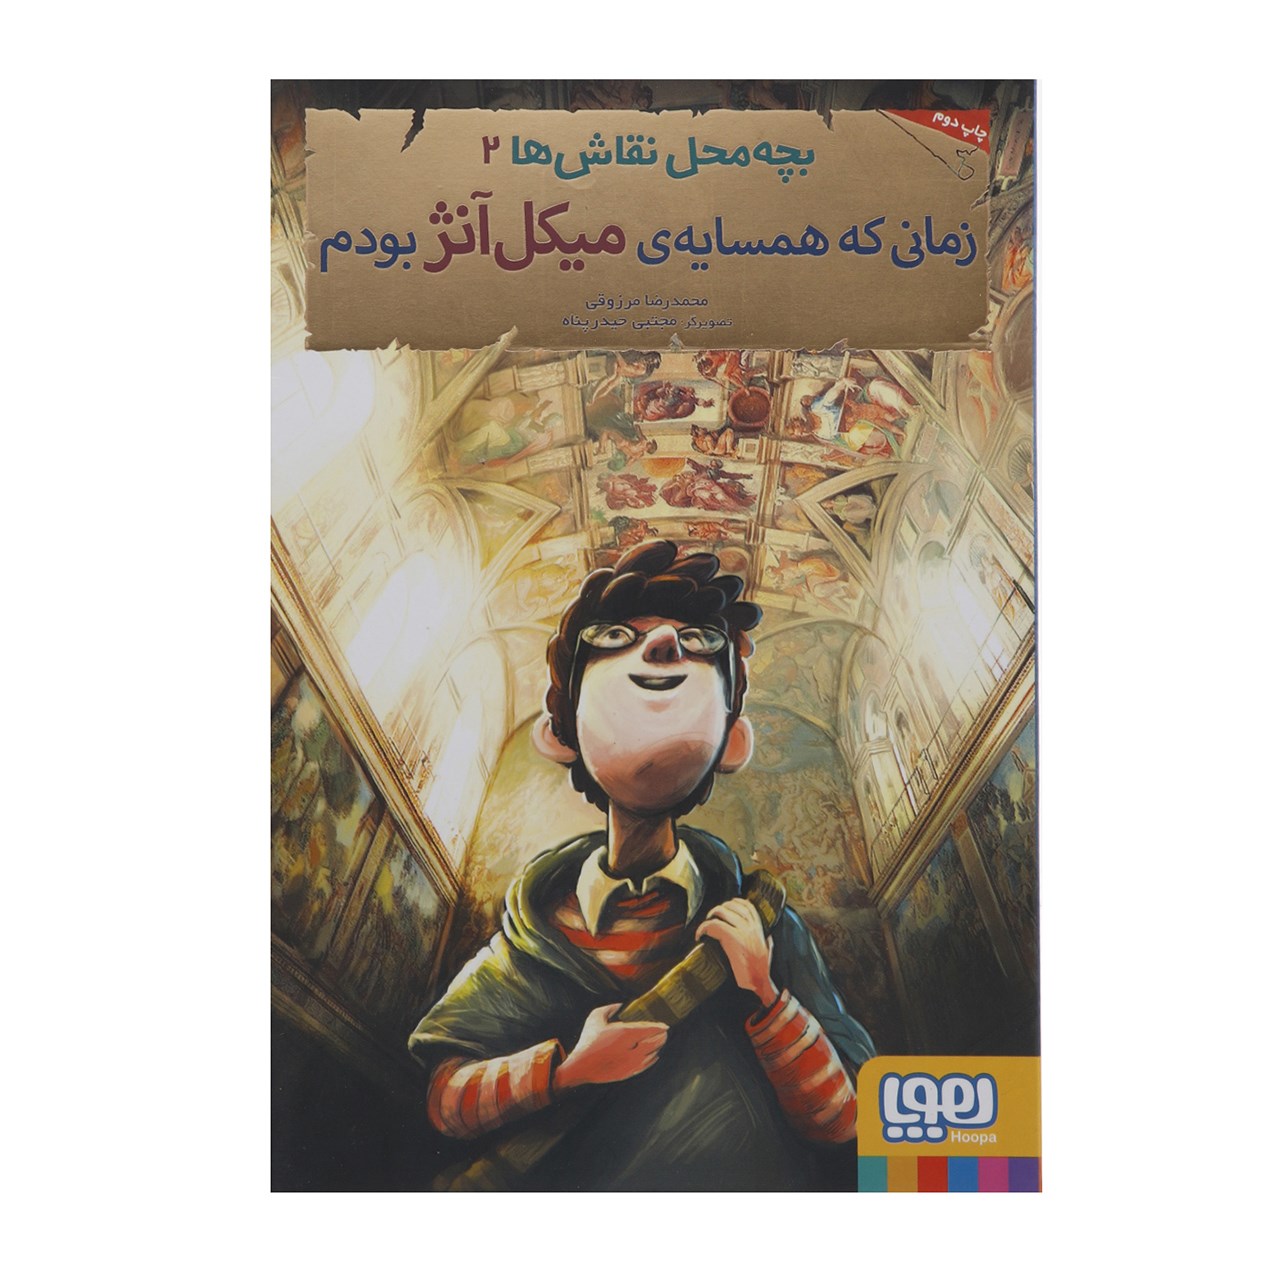 نقد و بررسی کتاب بچه محل نقاش ها 2 اثر محمدرضا مرزوقی توسط خریداران